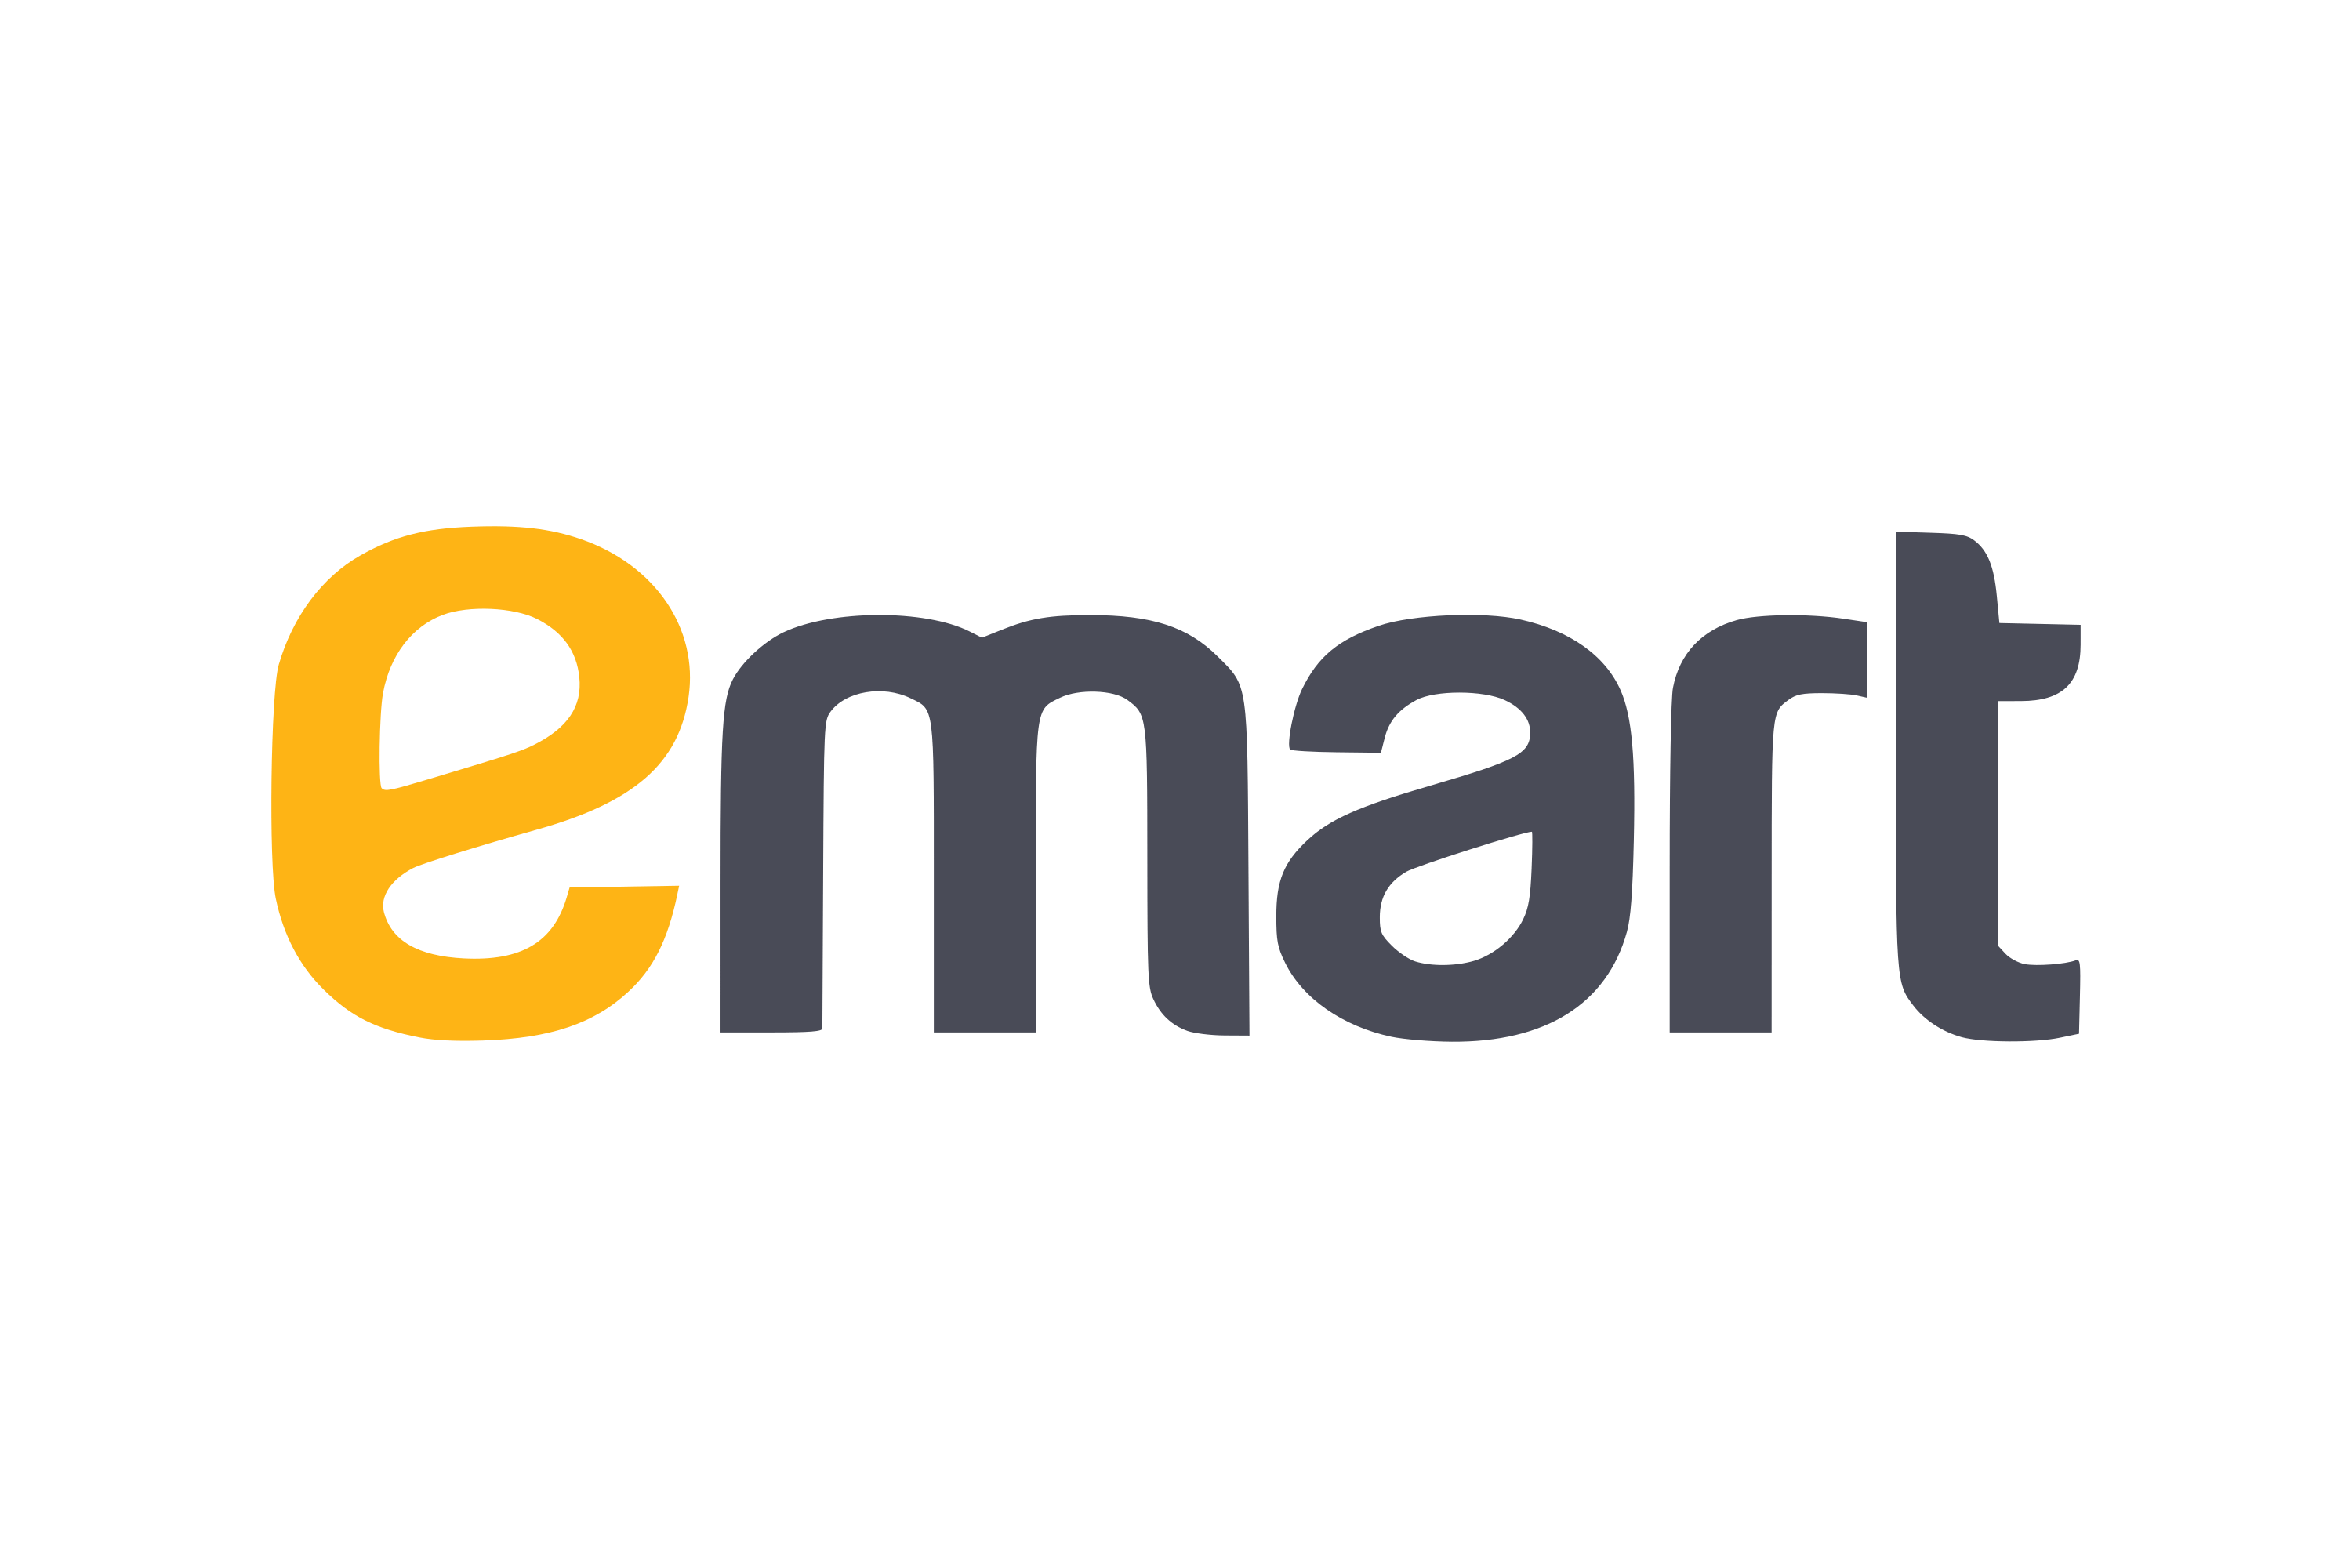 Download e-mart Logo in SVG Vector or PNG File Format 